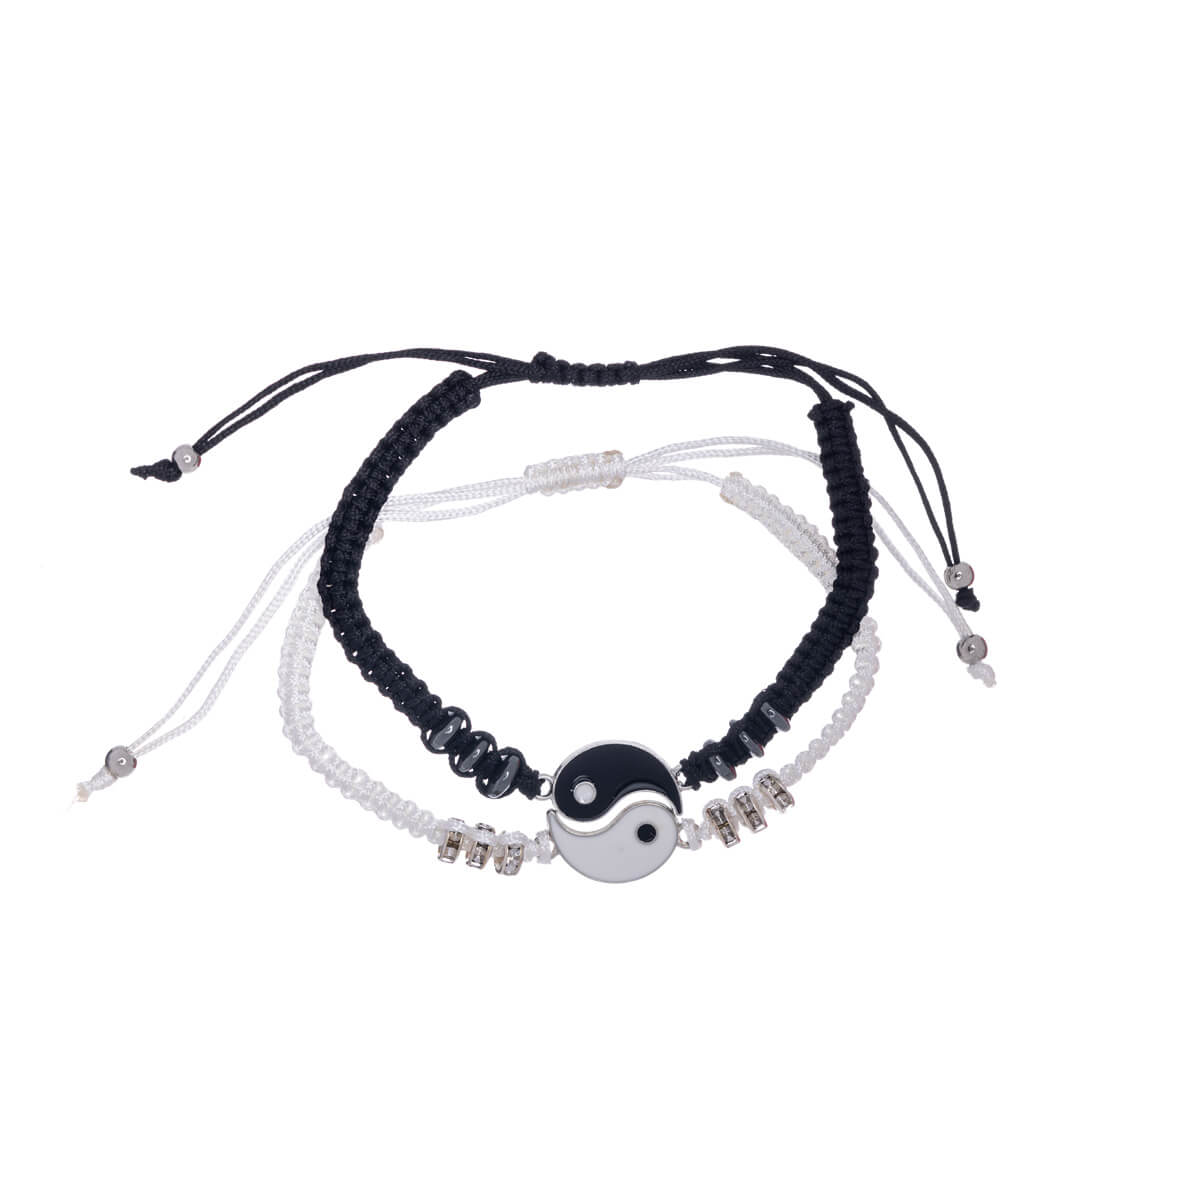 Yin yang friendship bracelet adjustable bracelet 2pcs